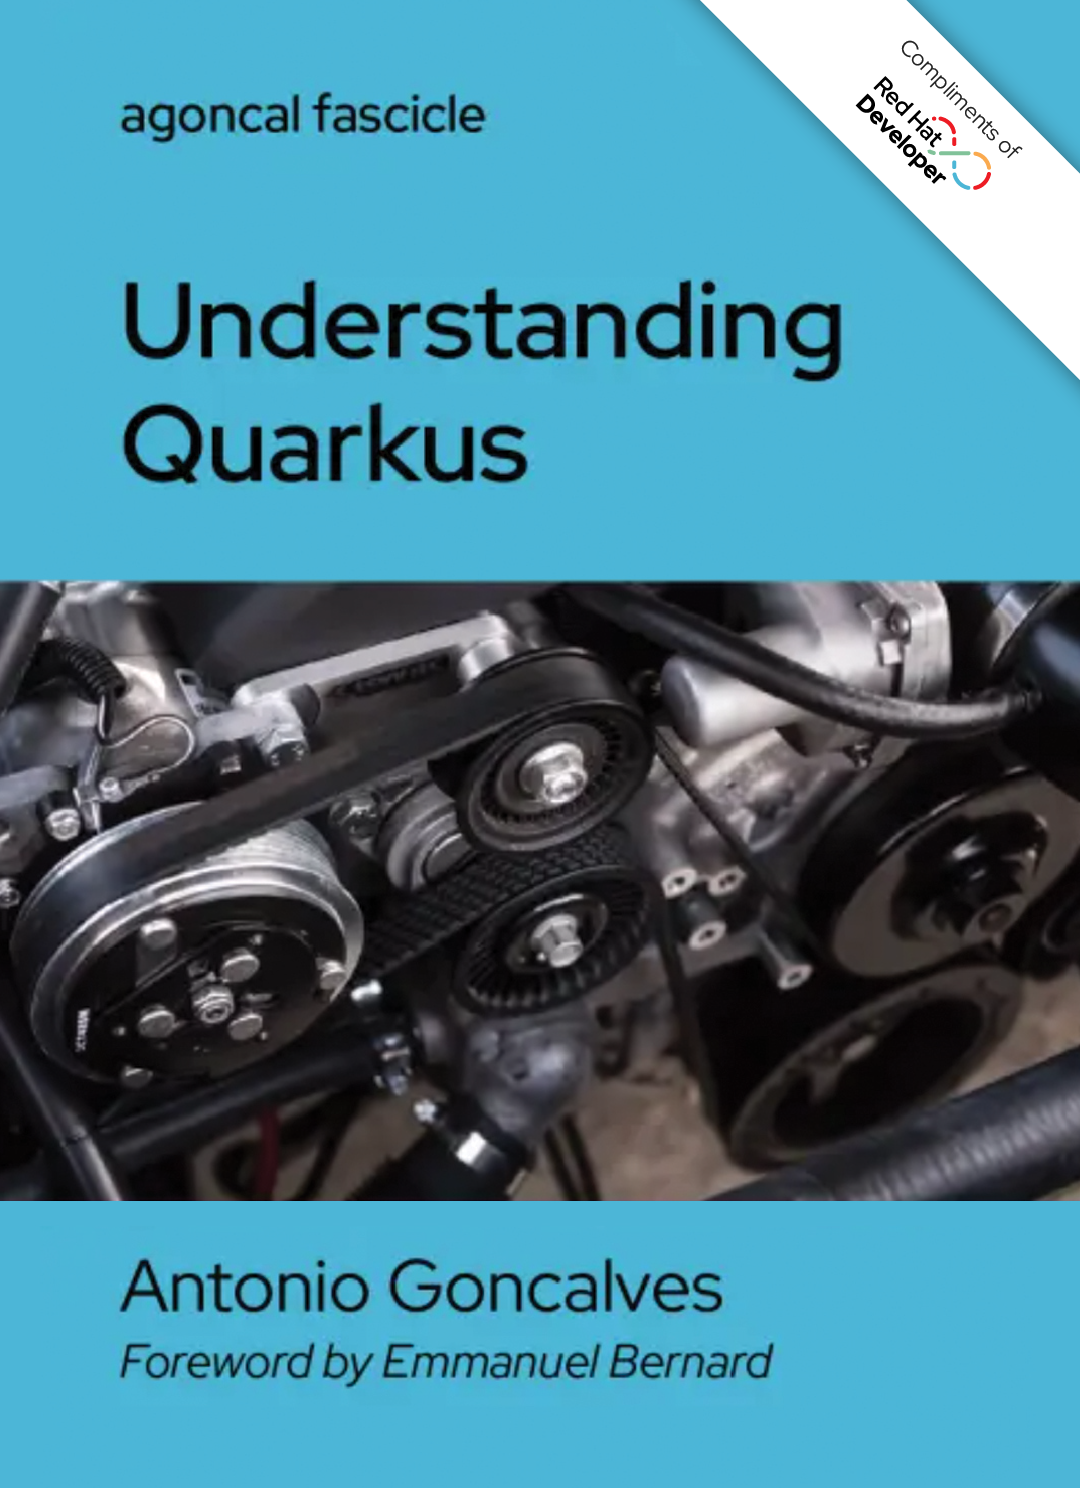 Understanding Quarkus_Cover Image